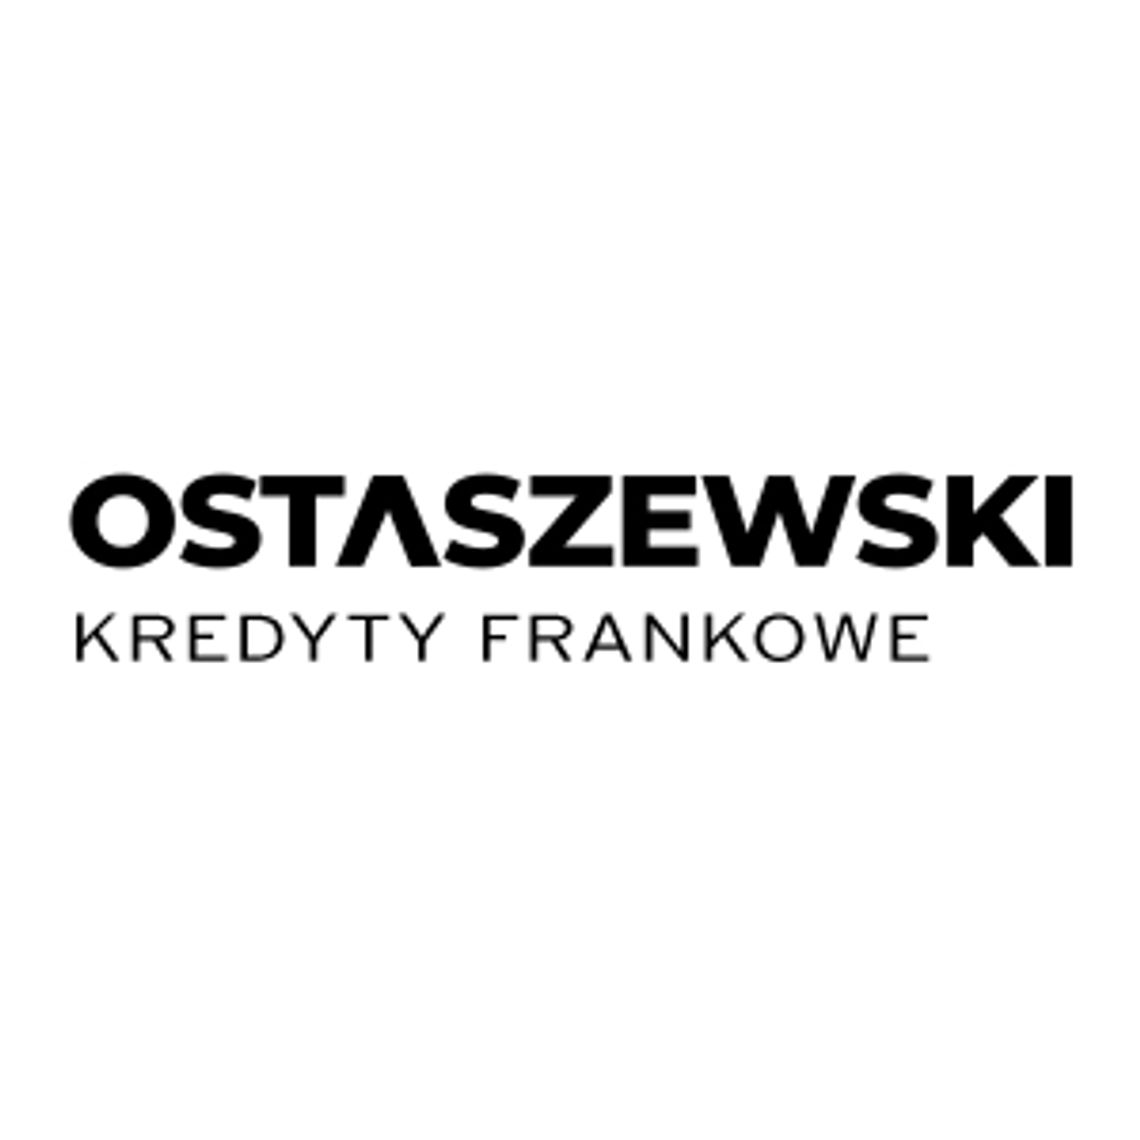 Obsługa Prawna Frankowiczów Poznań - Ostaszewski Kredyty Frankowe